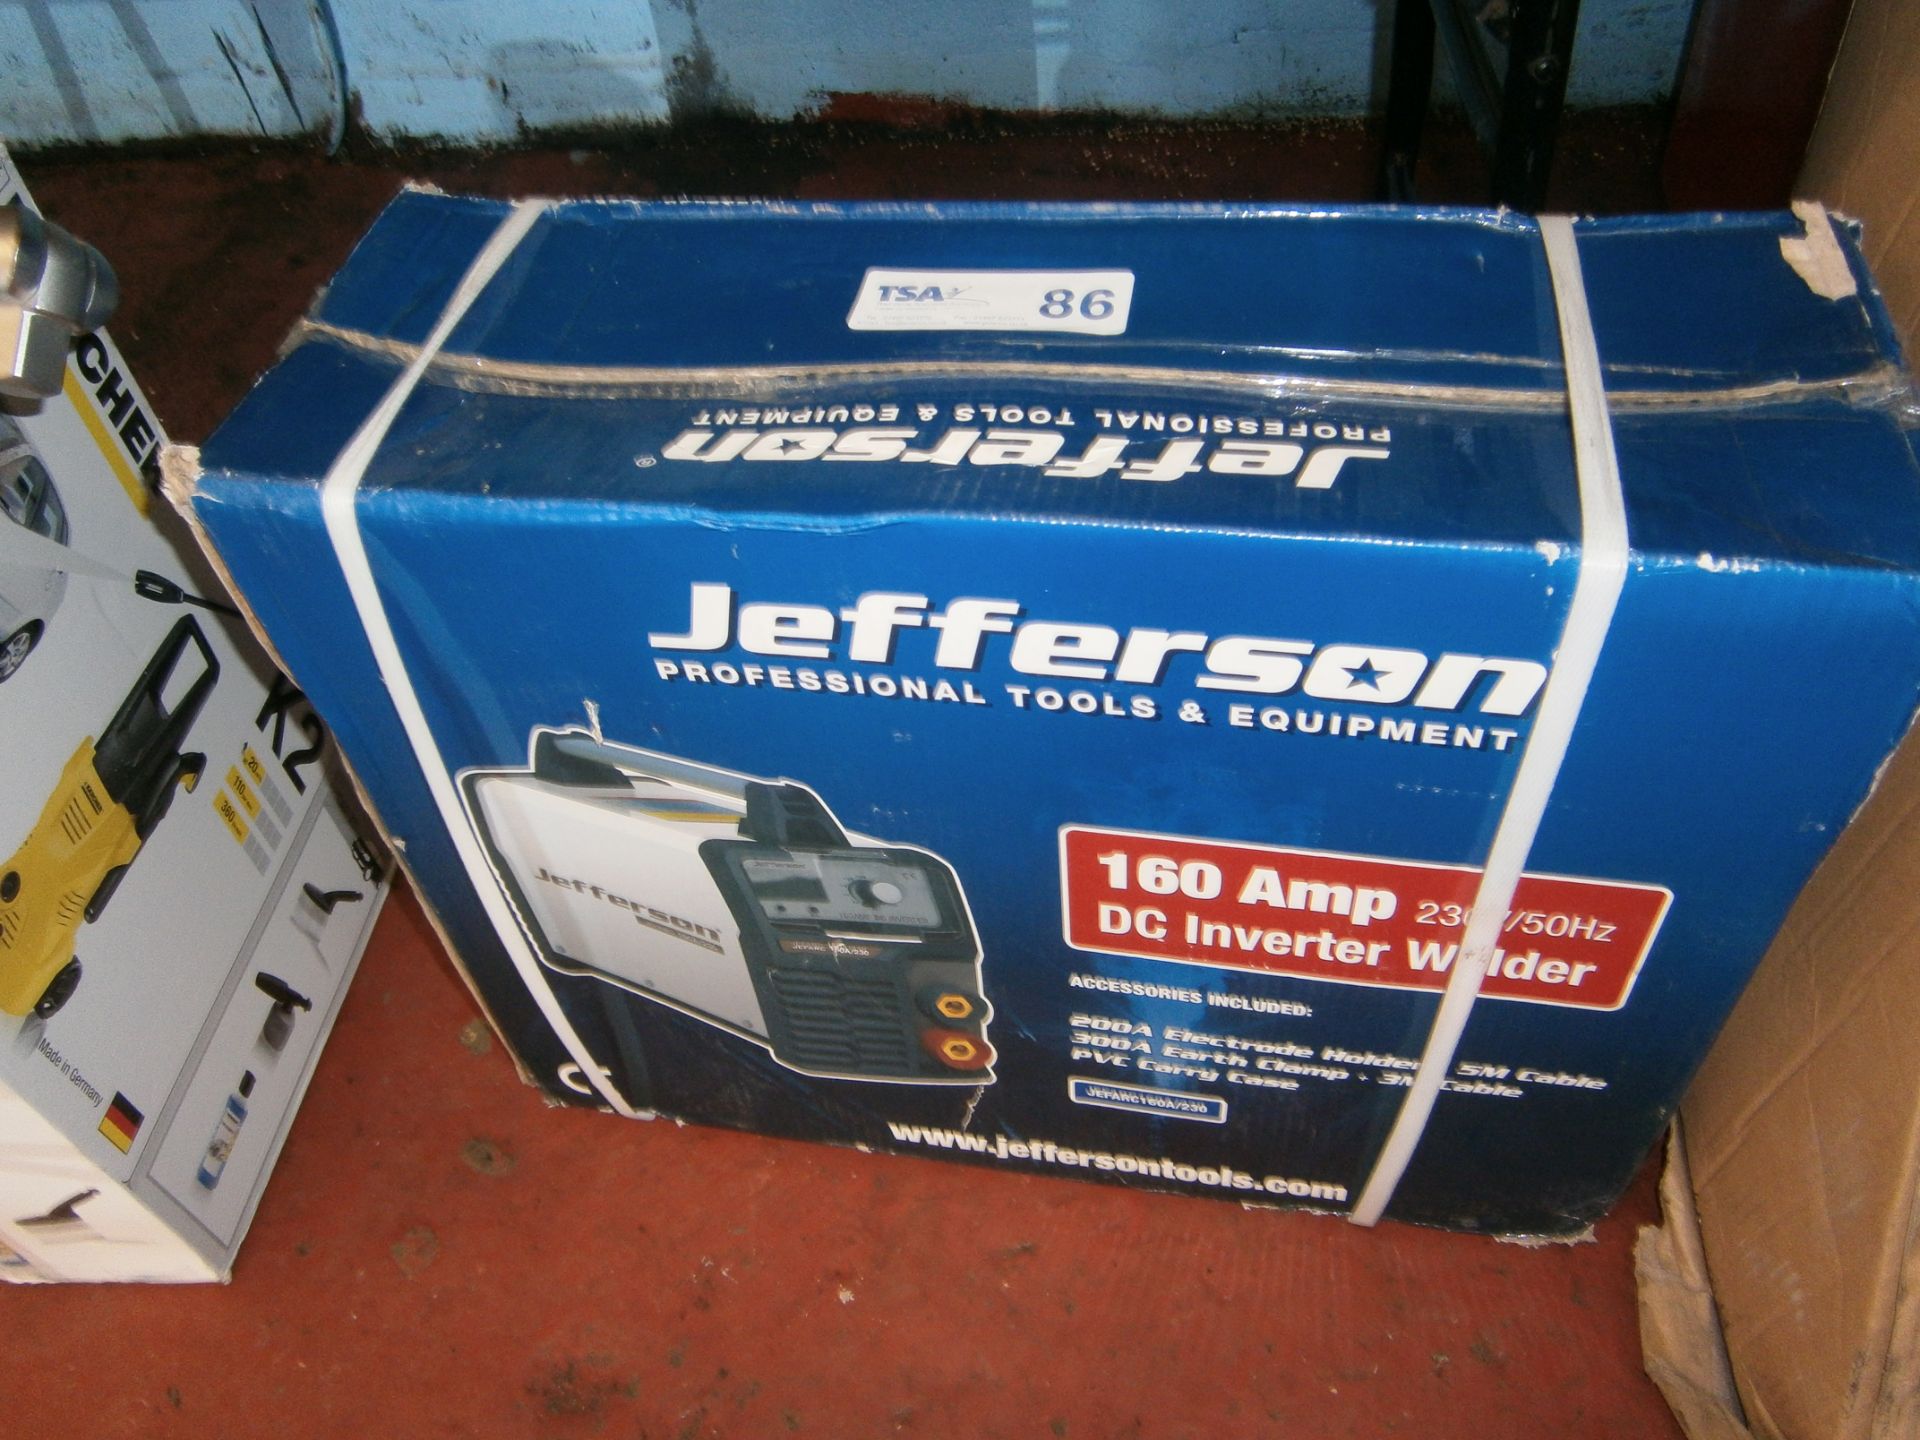 Jefferson 160 Amp 230v/50Hz DC Inverter Welder